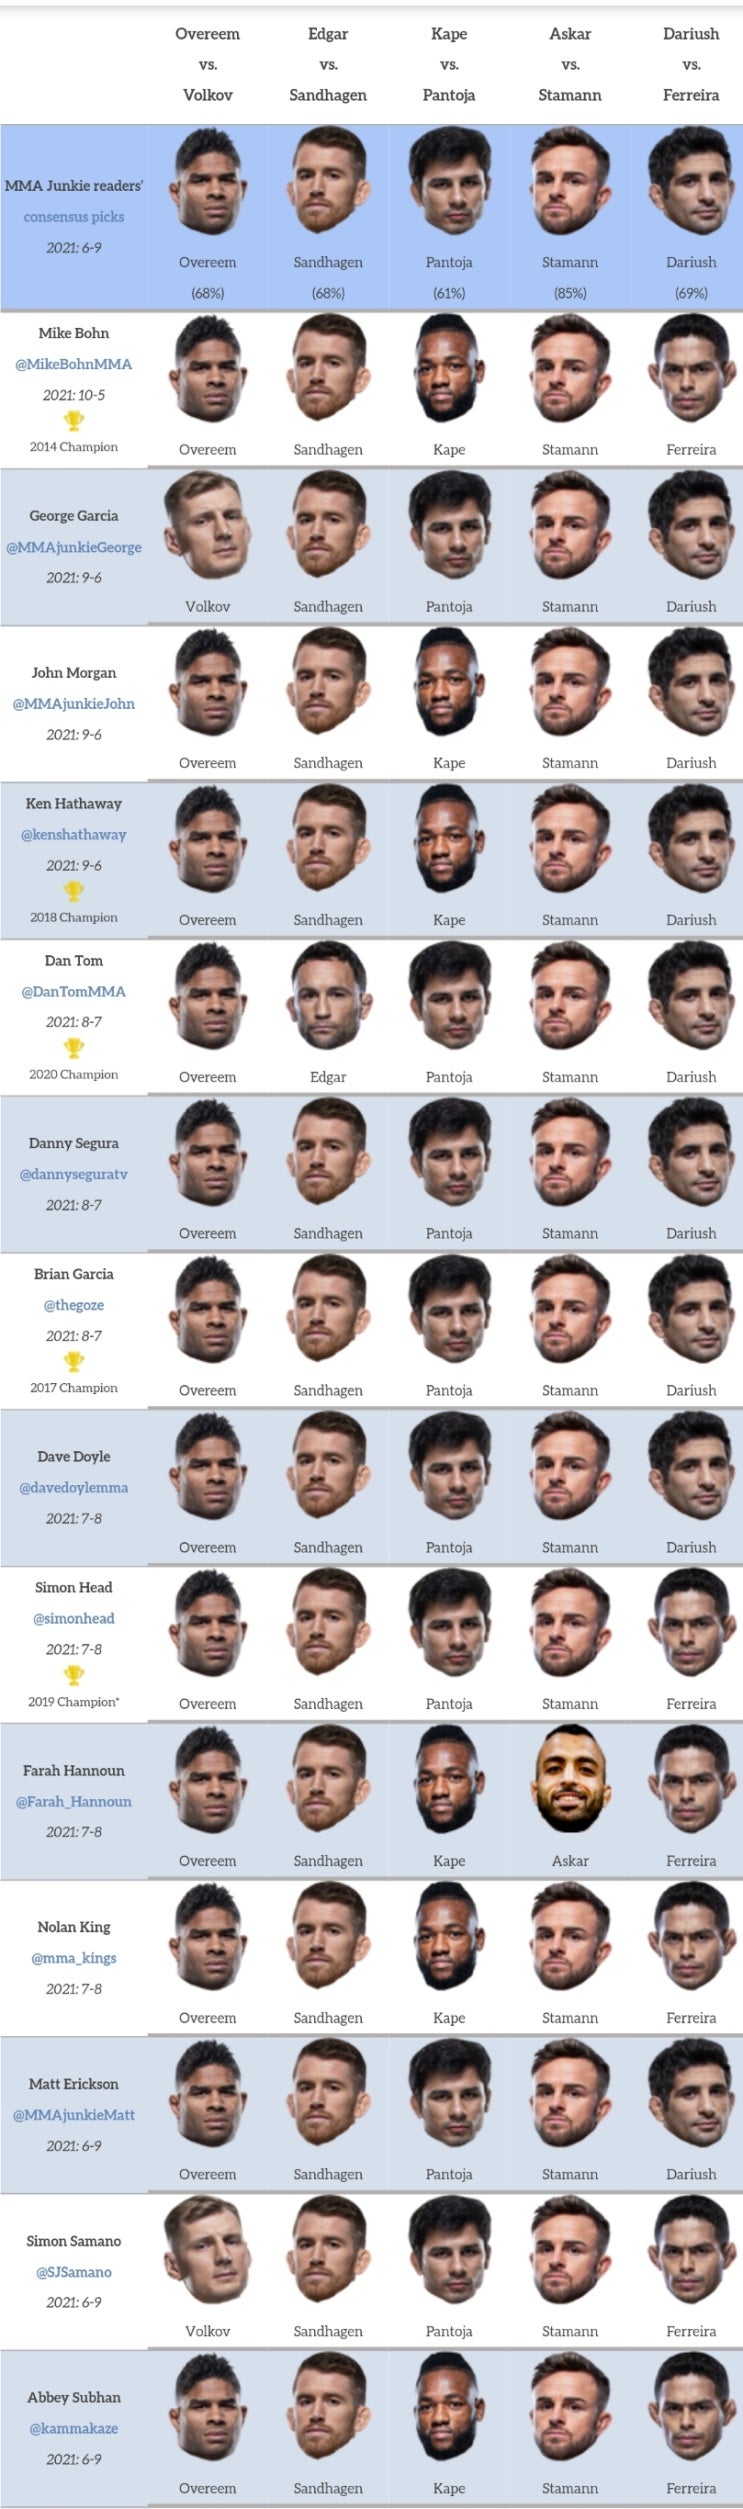 UFC 베가스 18: 오브레임 vs 볼코프(최승우 출전) 프리뷰(미디어 예상 및 배당률)